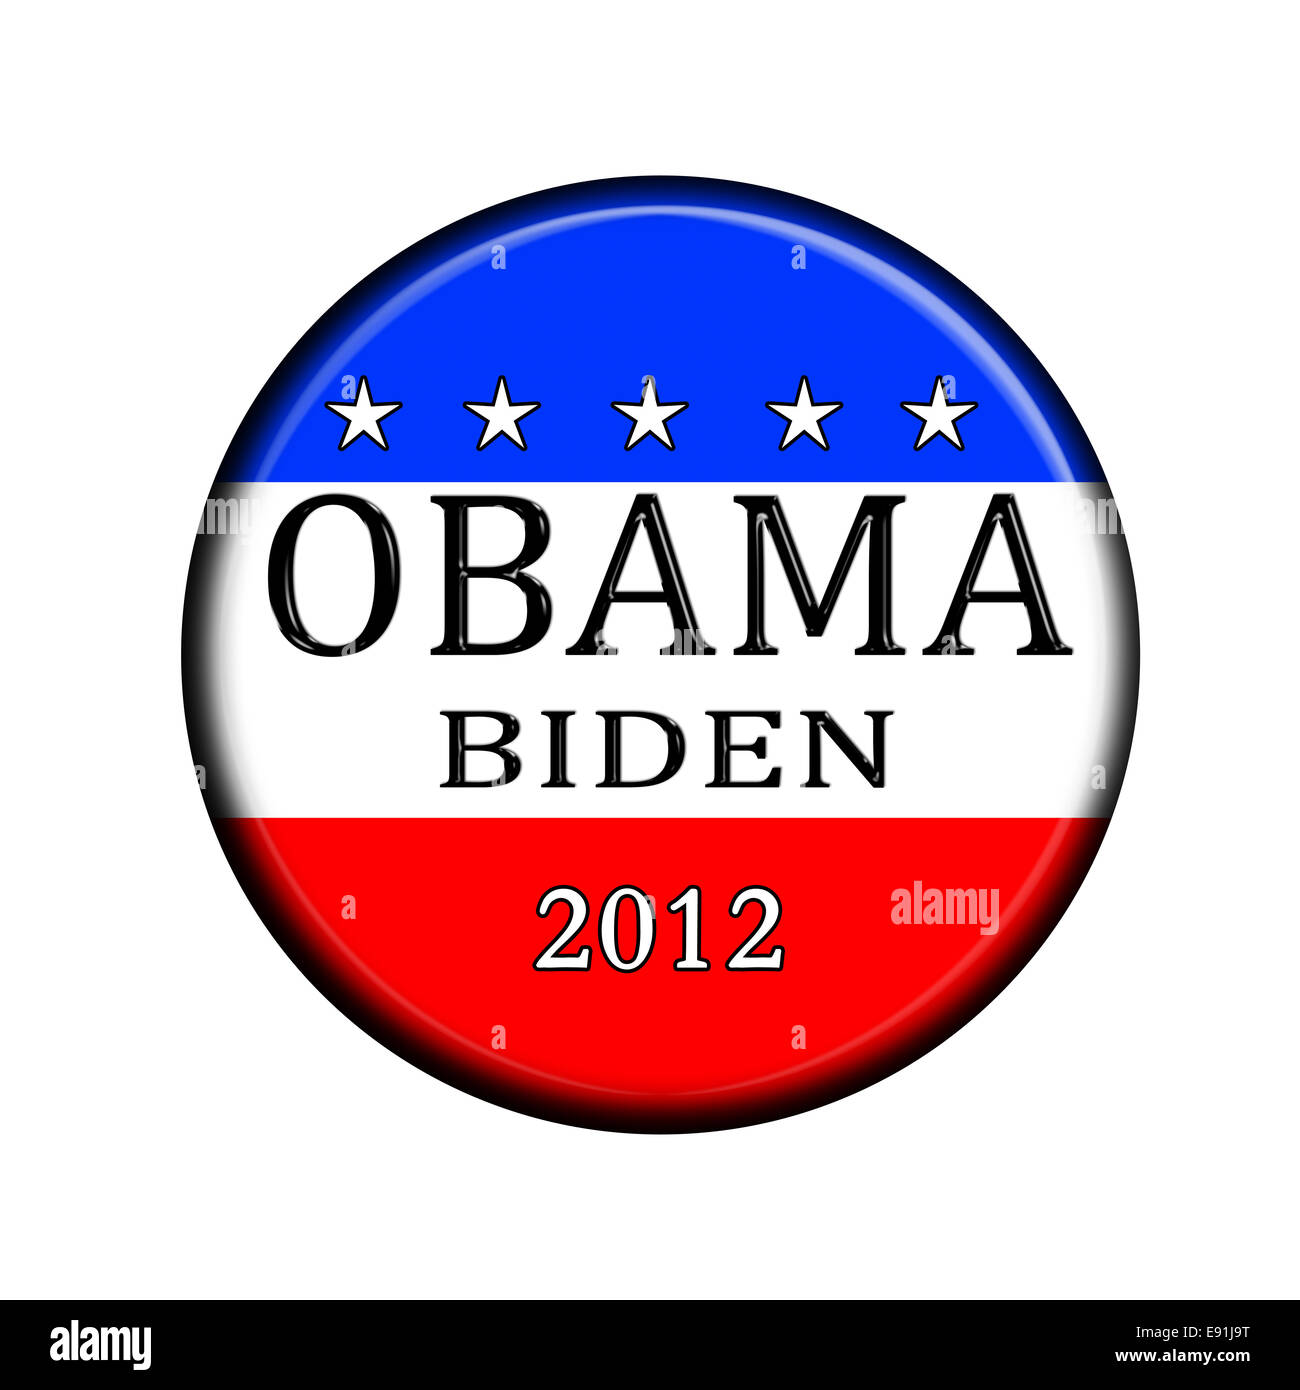 Obama Biden Election Butoon Stock Photo